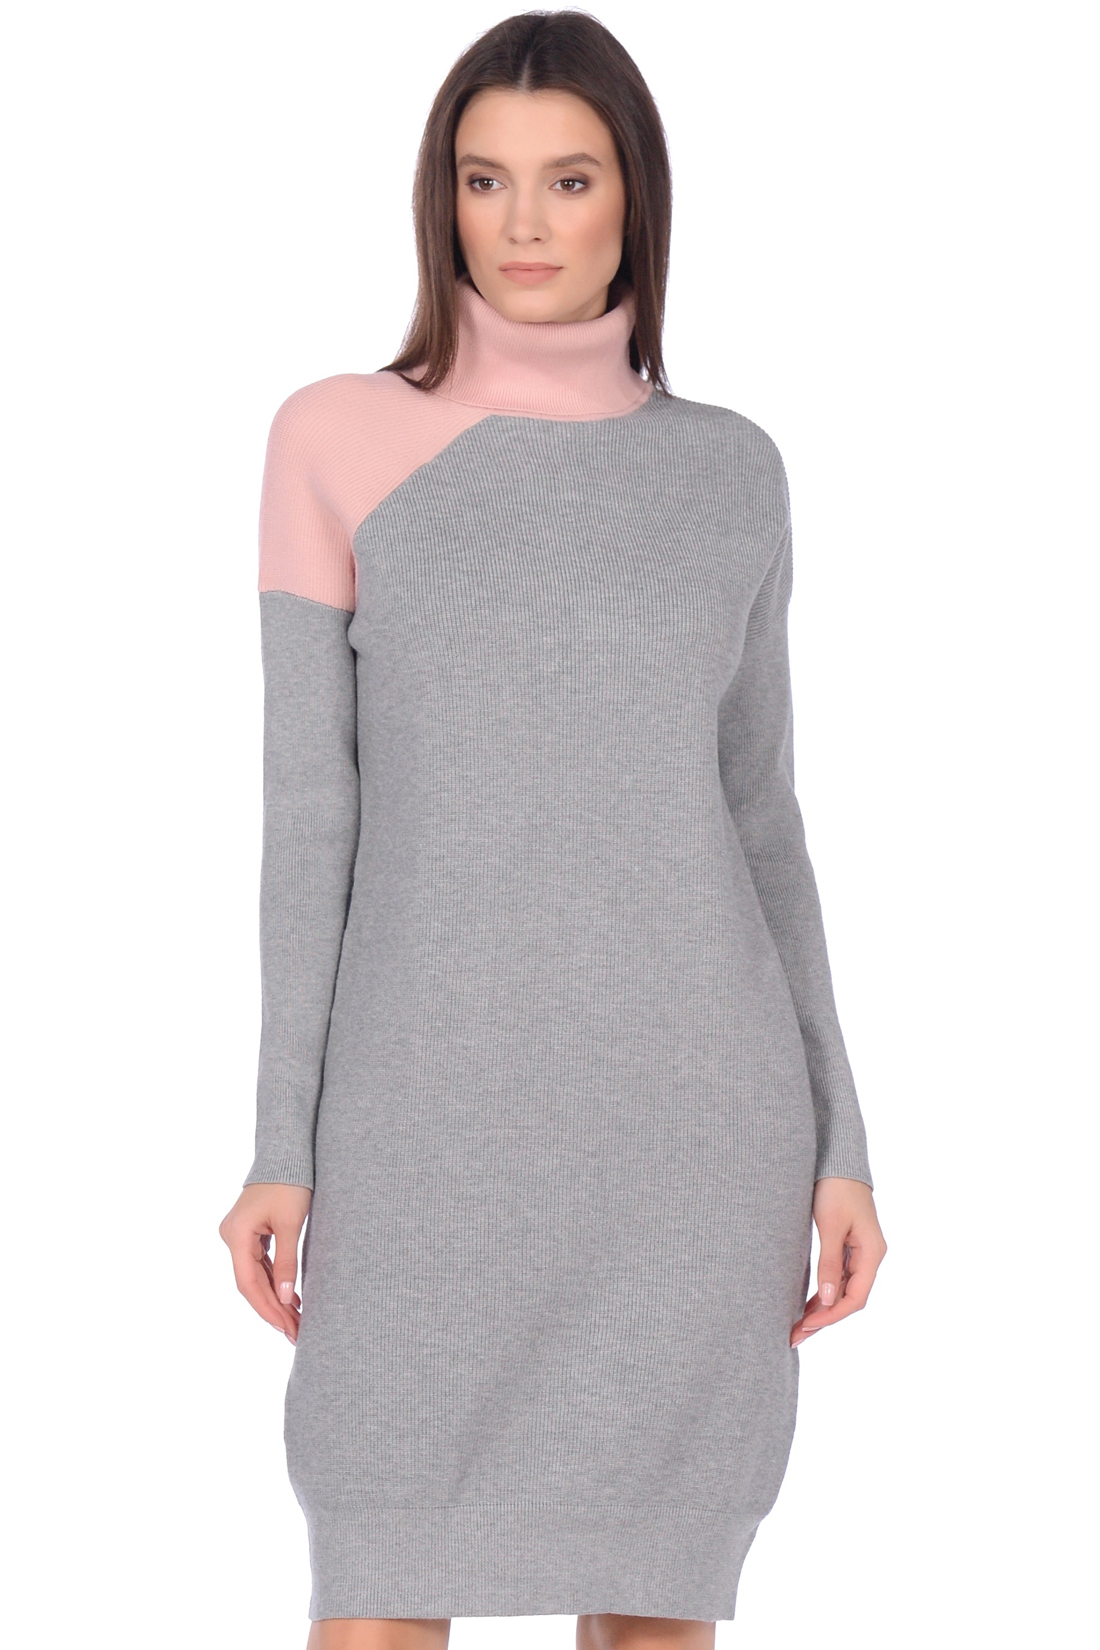 Платье-свитер в стиле color block (арт. baon B459530), размер M, цвет белый Платье-свитер в стиле color block (арт. baon B459530) - фото 3